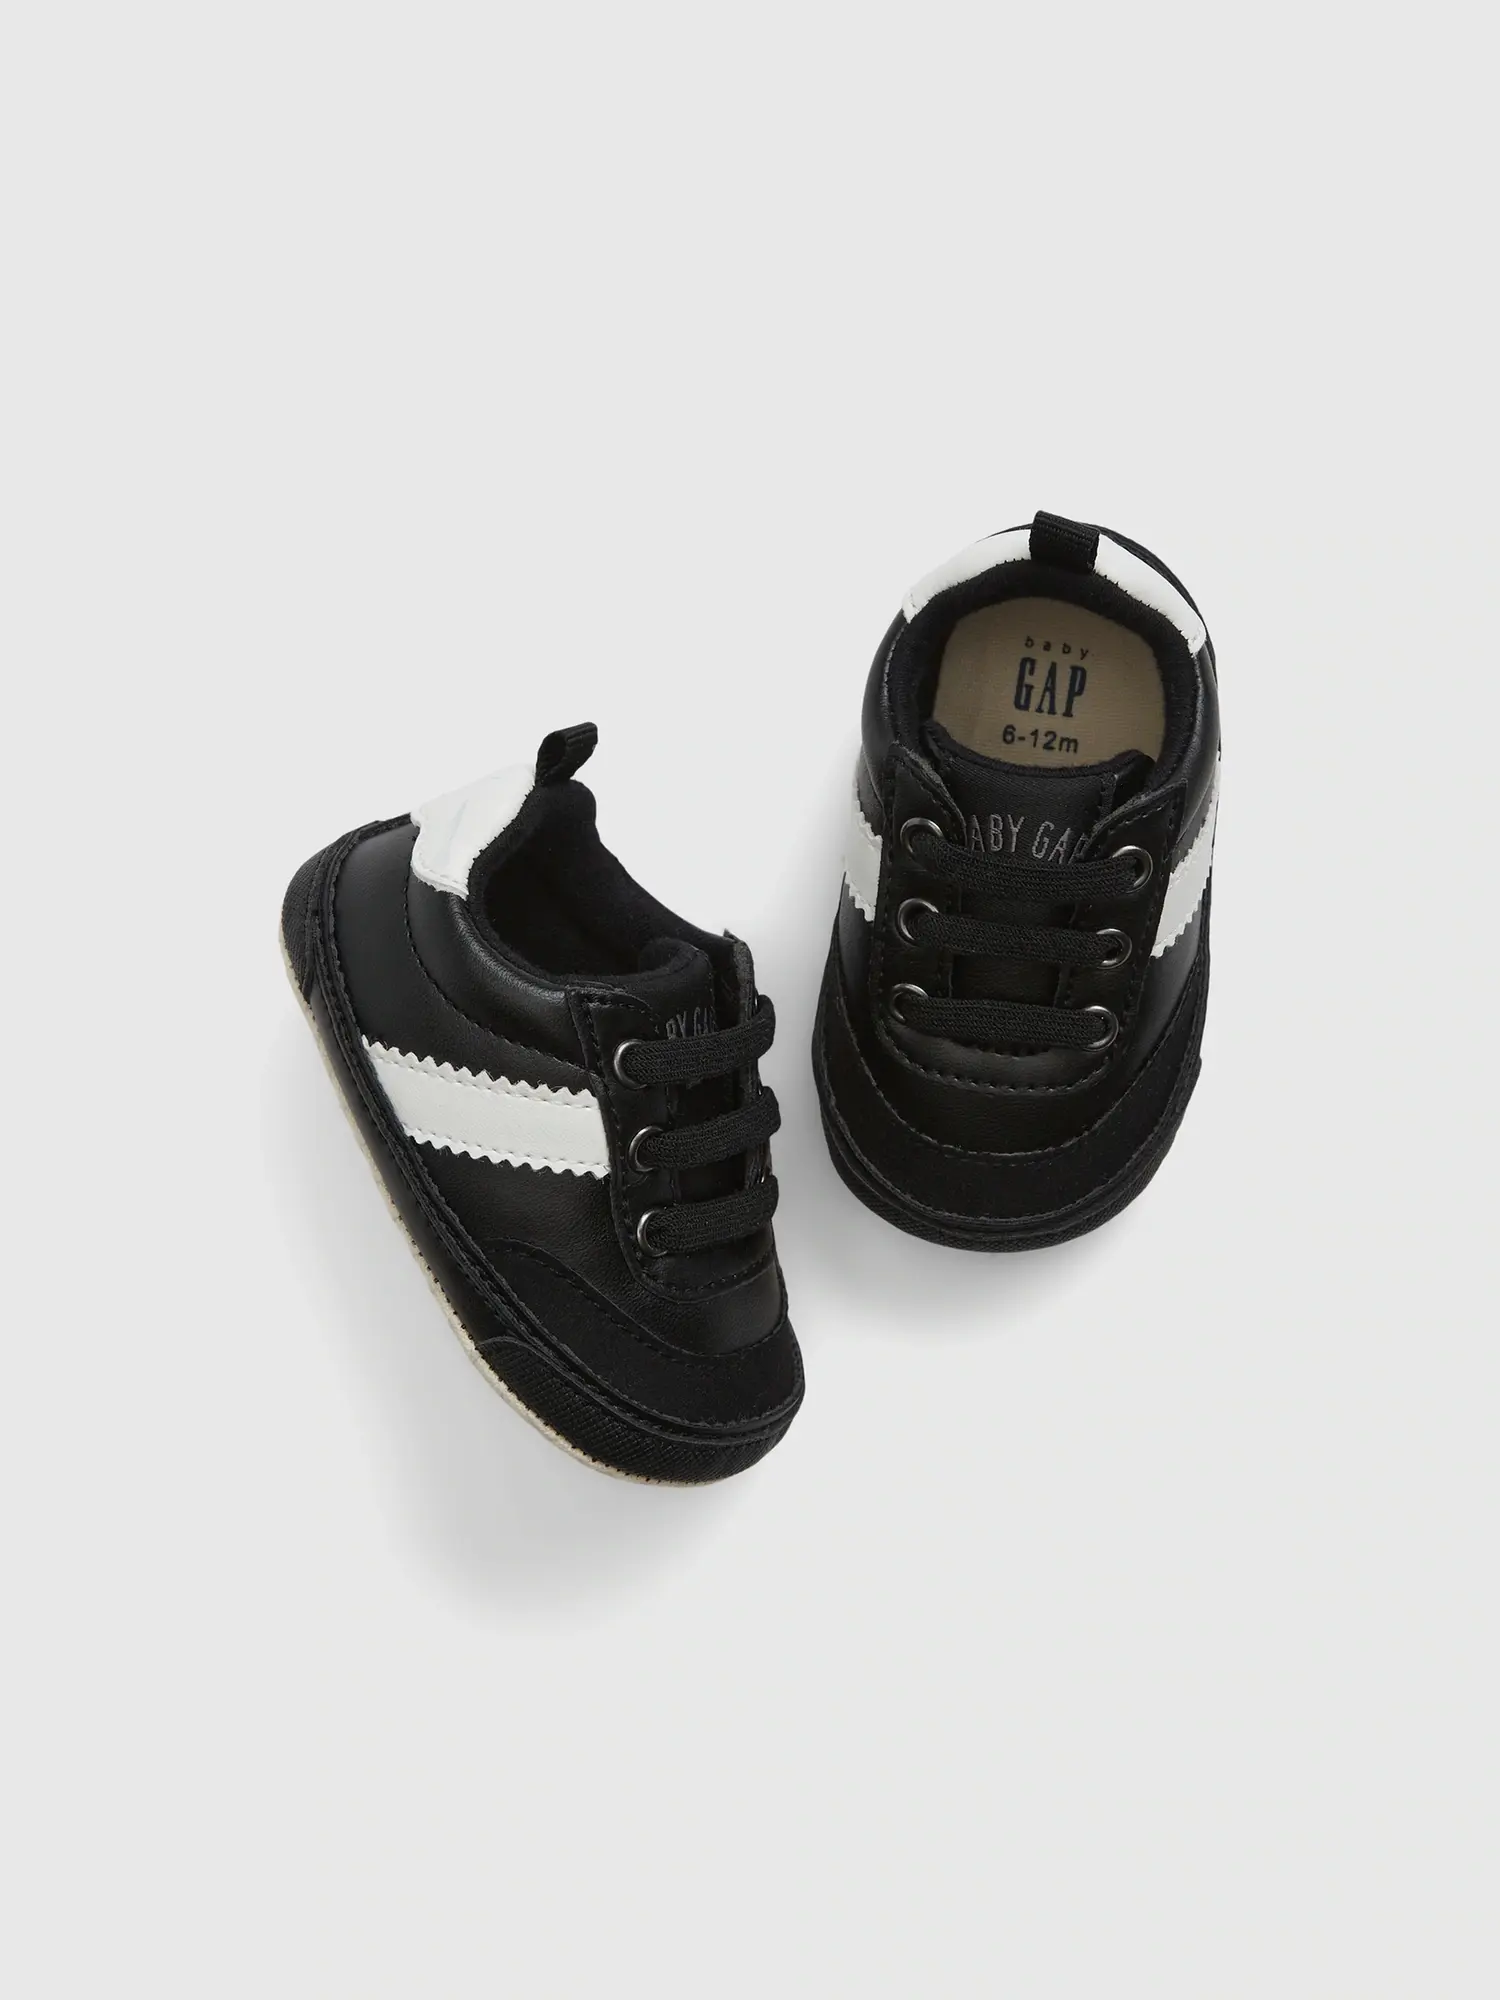 Gap Baby Stripe Sneakers black. 1